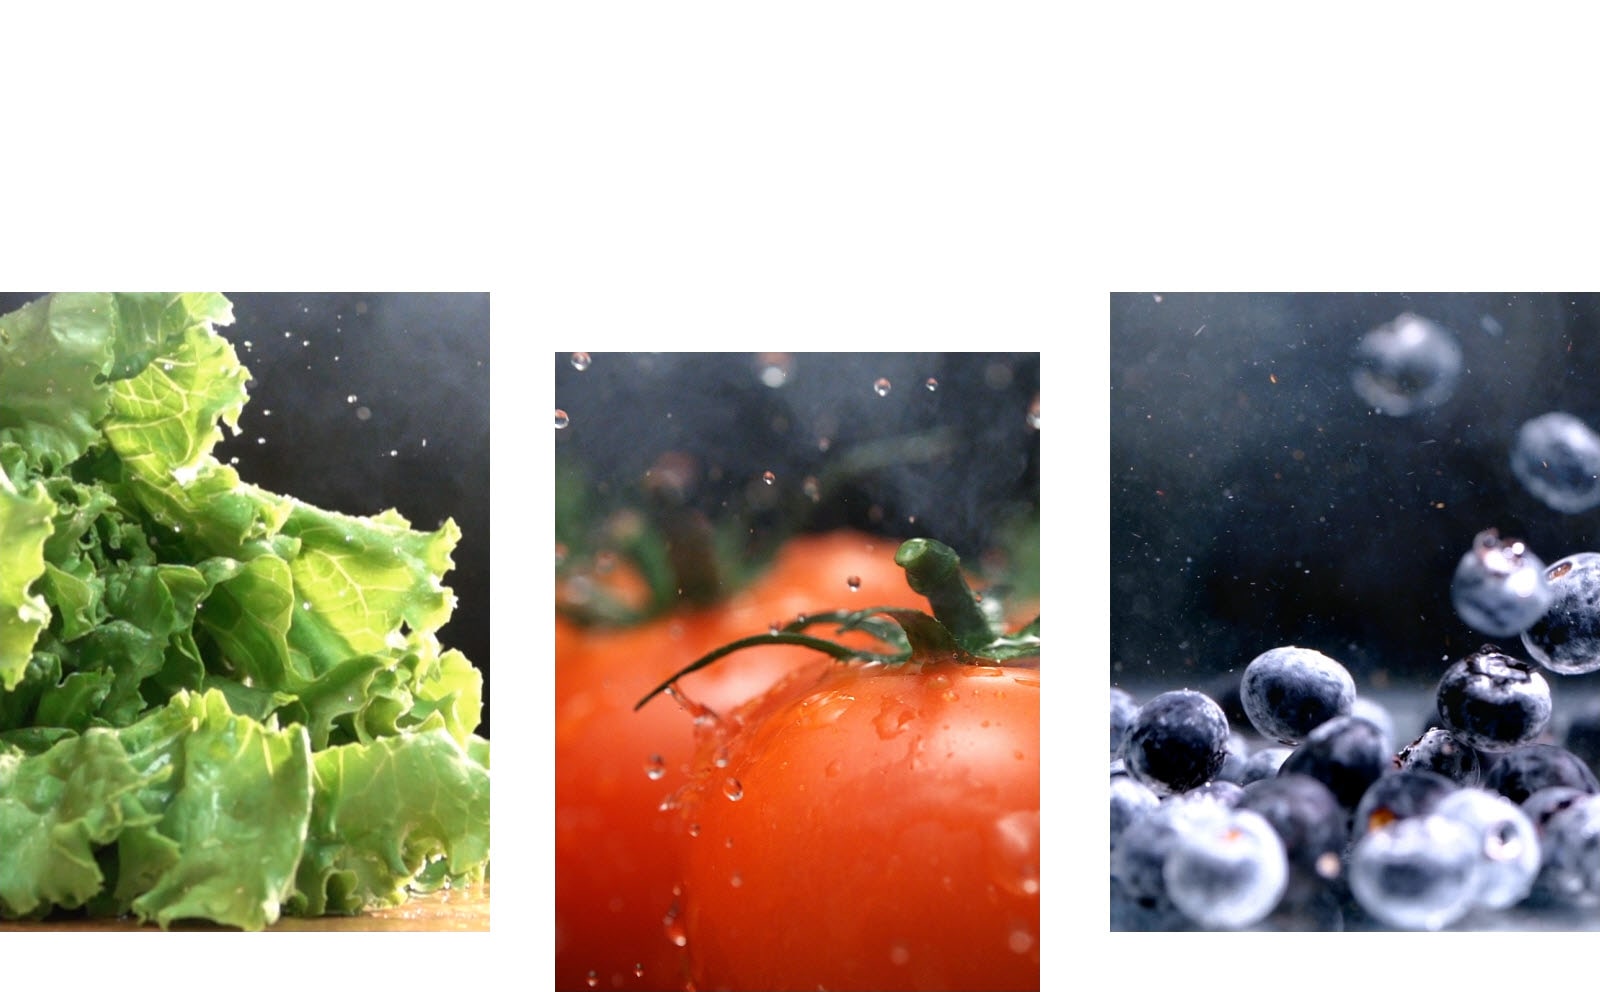 Snimak izbliza na kojem voda kaplje sa hrskave zelene salate nalazi se pored snimka izbliza na kojem voda pada na sveži crveni paradajz, pored snimka svetlih mokrih borovnica koje se kreću okolo